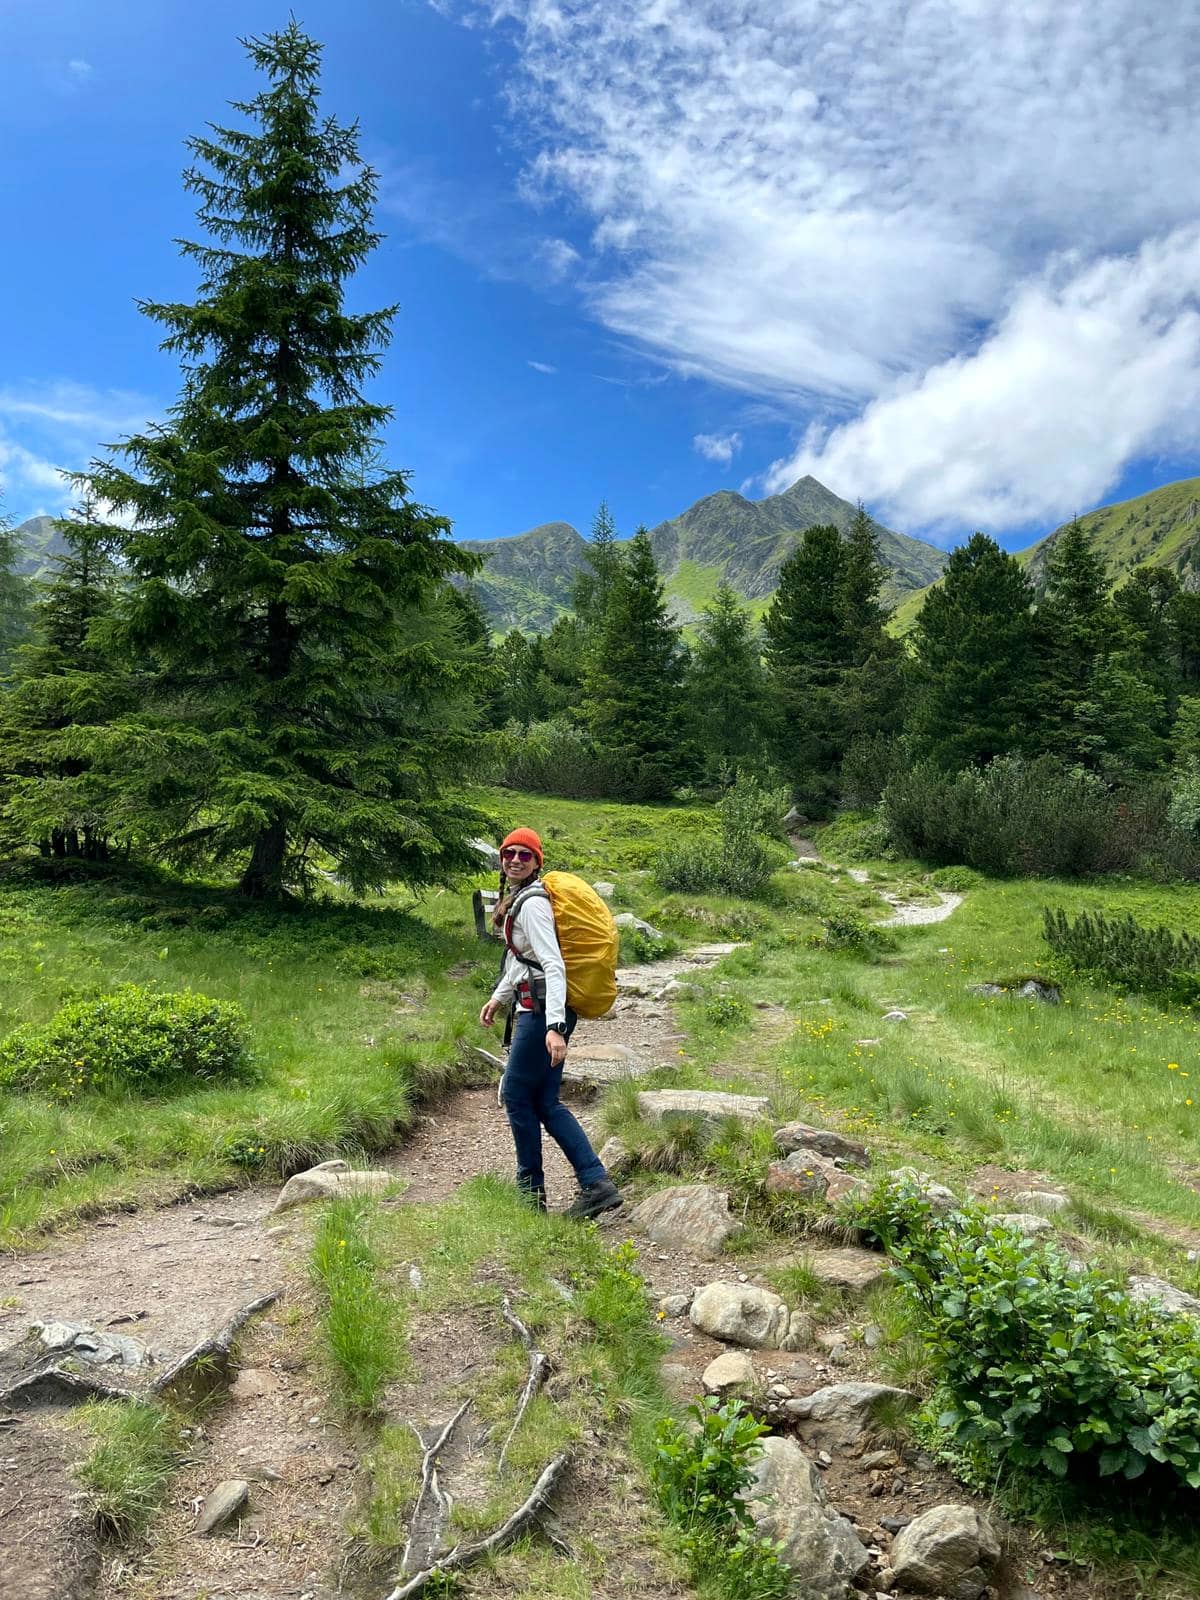 Frau in Wander-Outfit mit gelben Rucksack in Berglandschaft, blauer Himmel, Gras, grüne Bäume